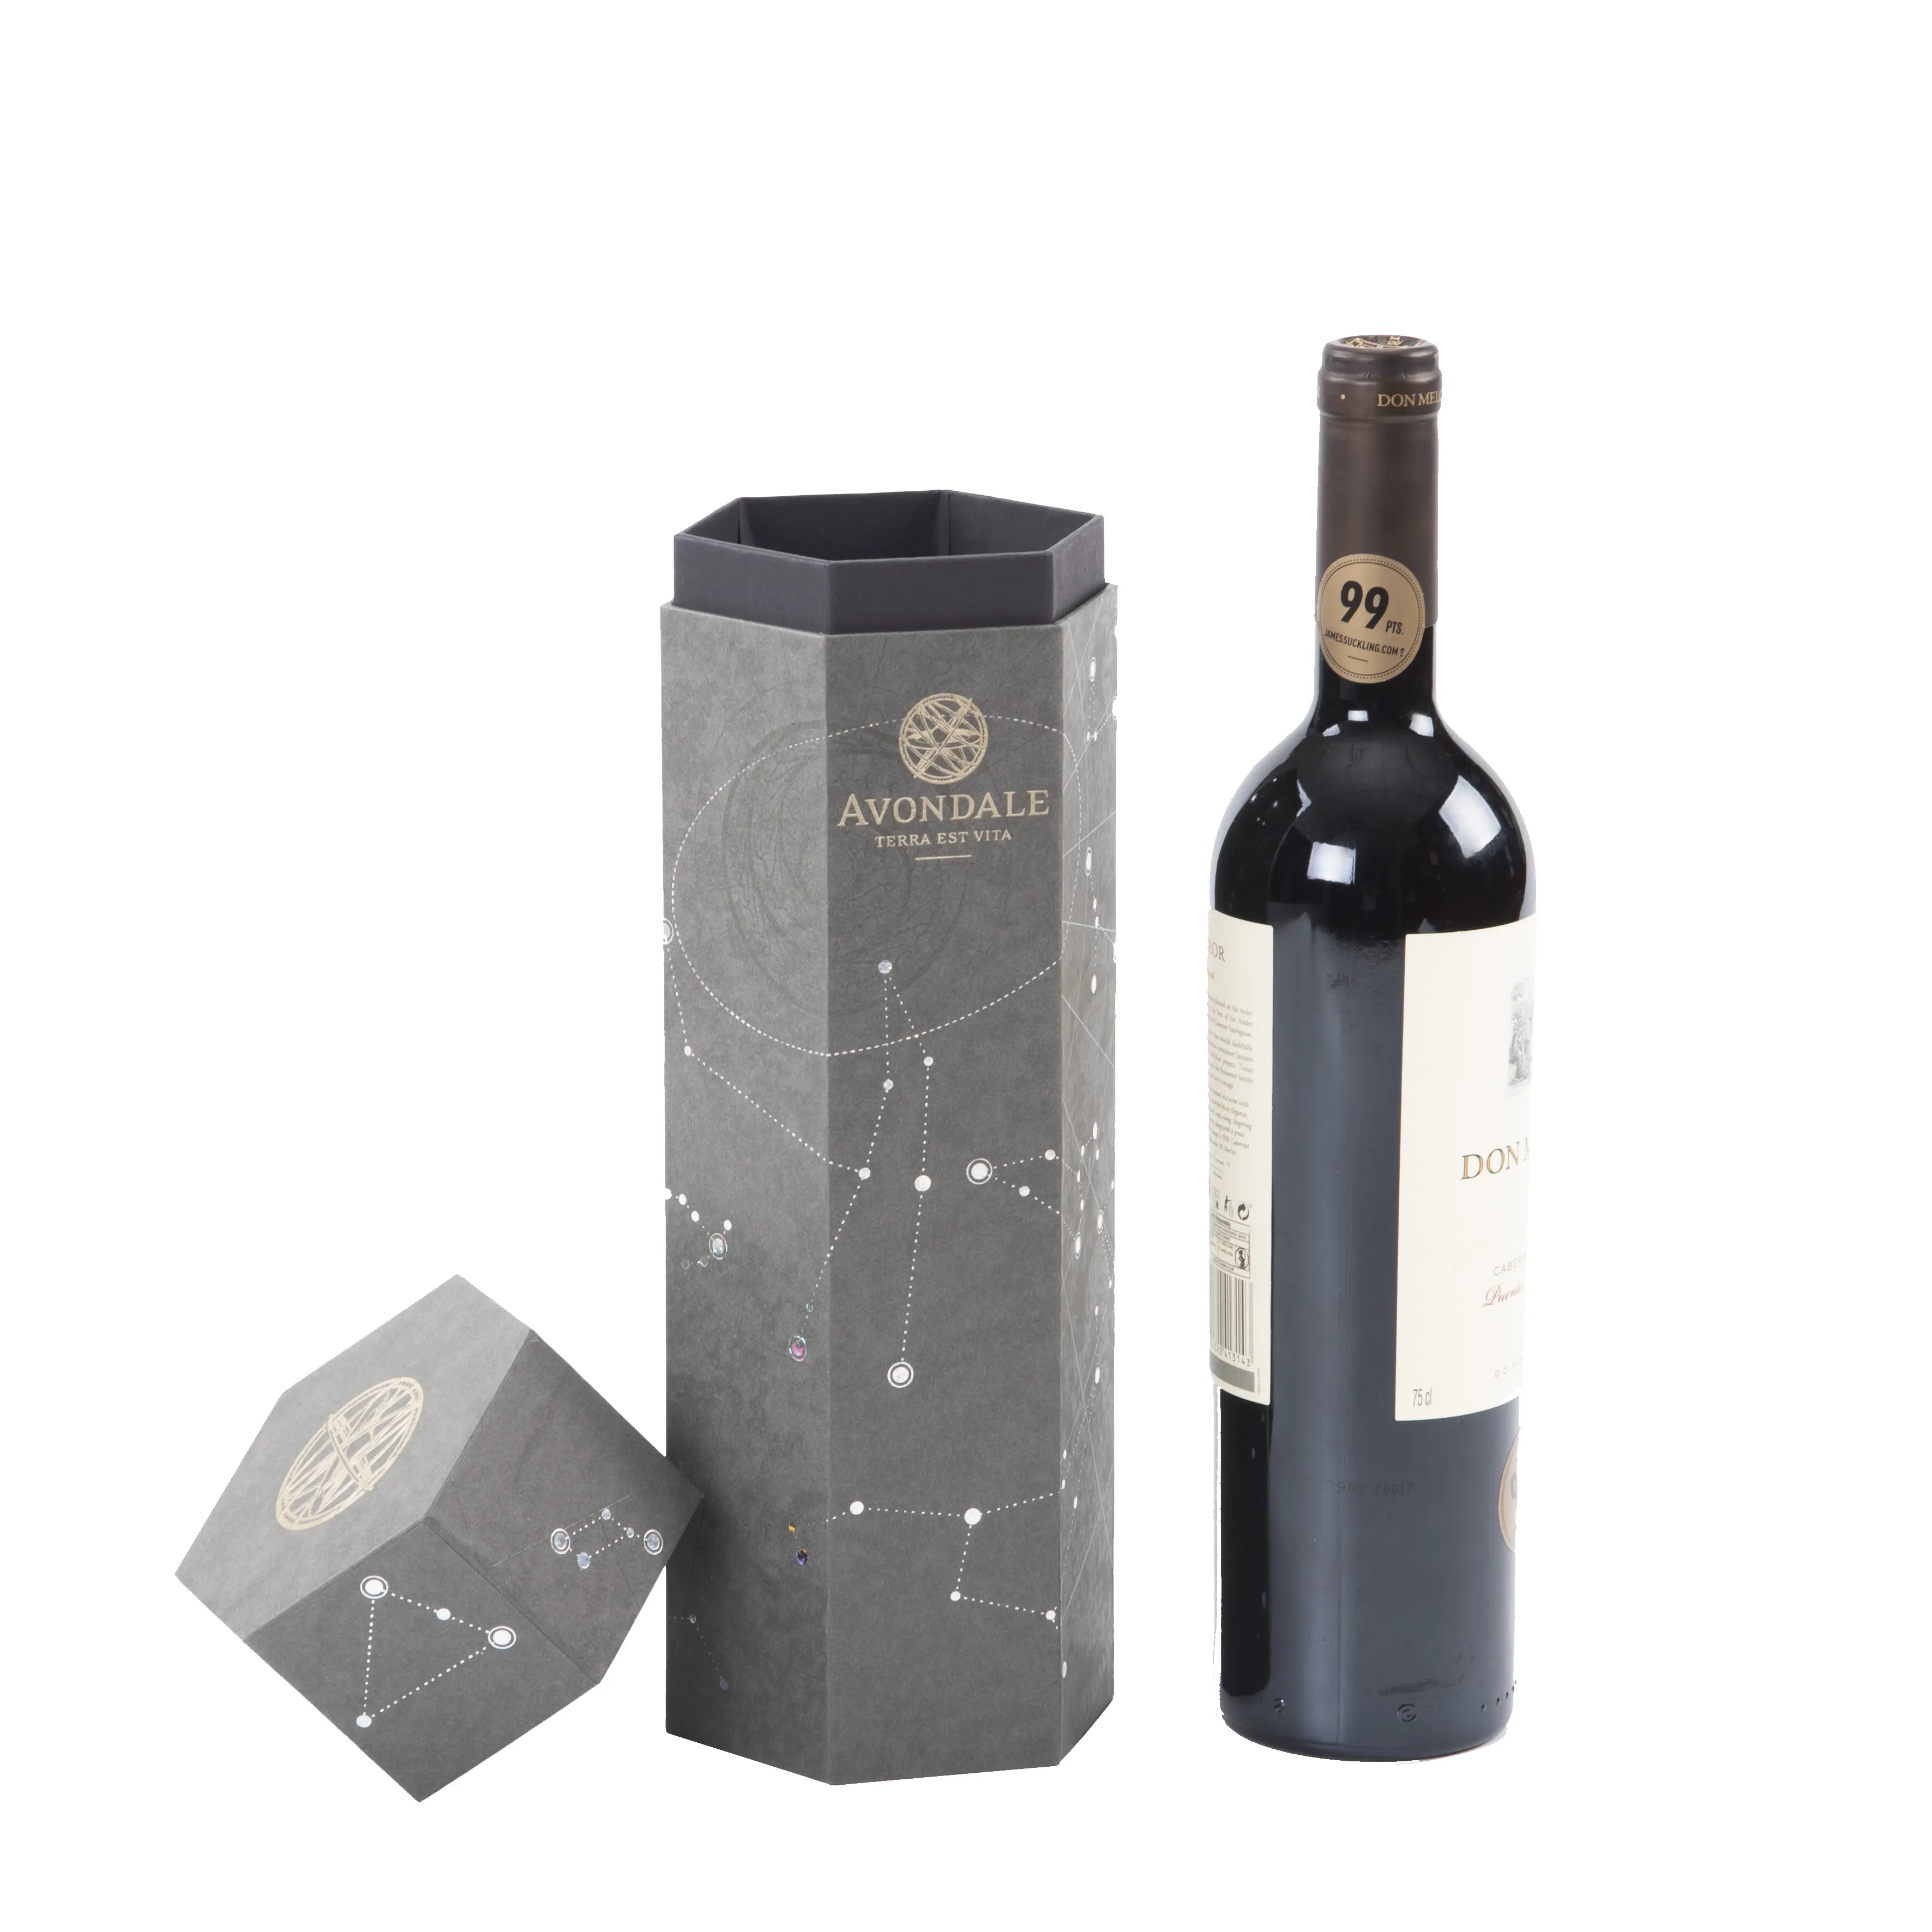 Promosyon silindir şarap karton hediye kağıdı kutu viski likör Kraft karton konteynerler yuvarlak şarap şişeleri ambalaj tüpü